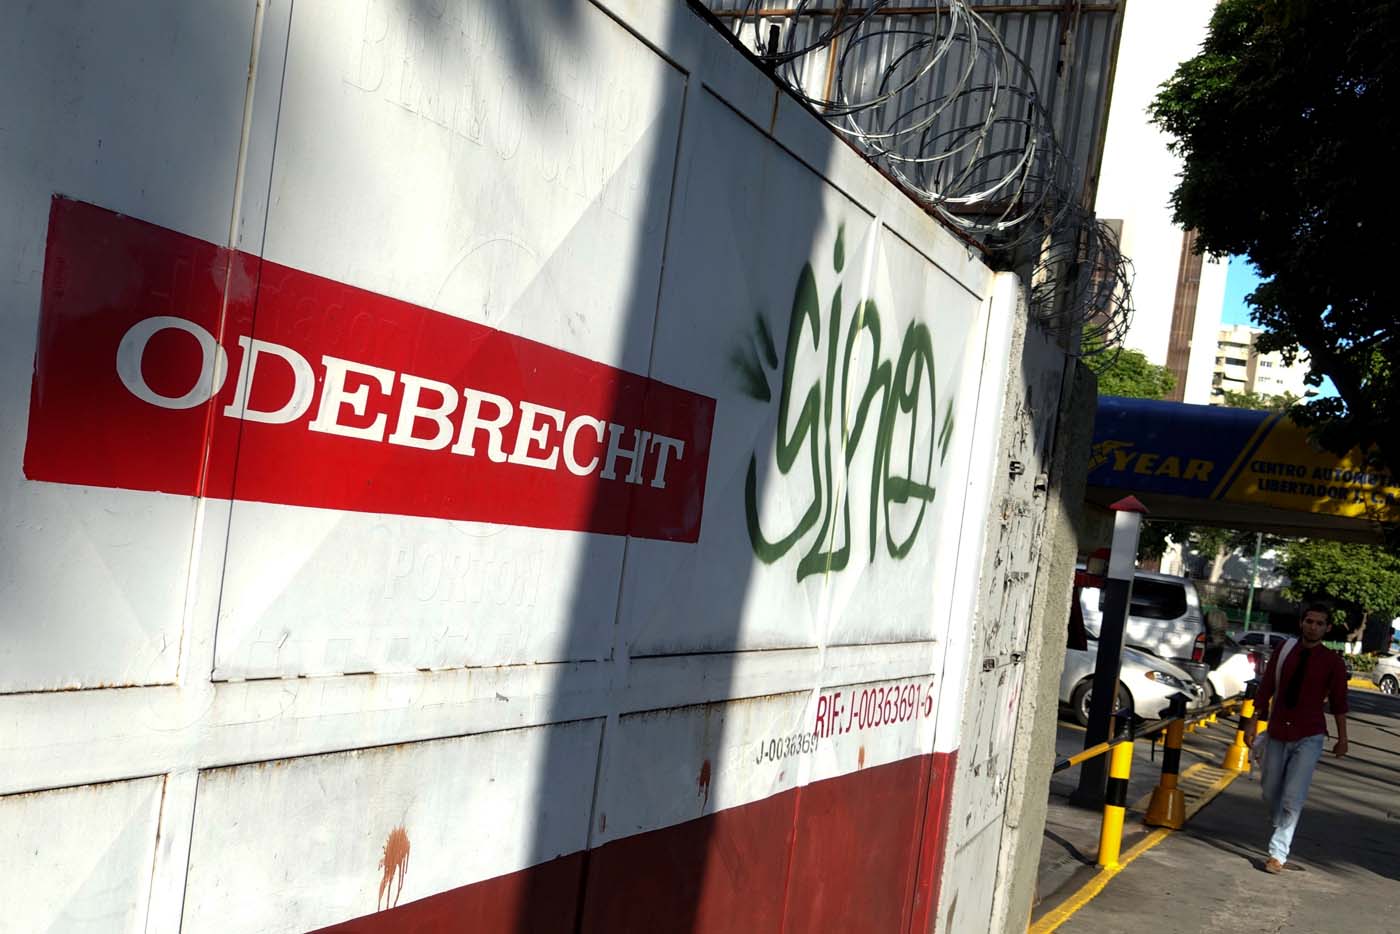 Odebrecht cuenta con siete días para entregar información sobre gasoducto a fiscalía peruana